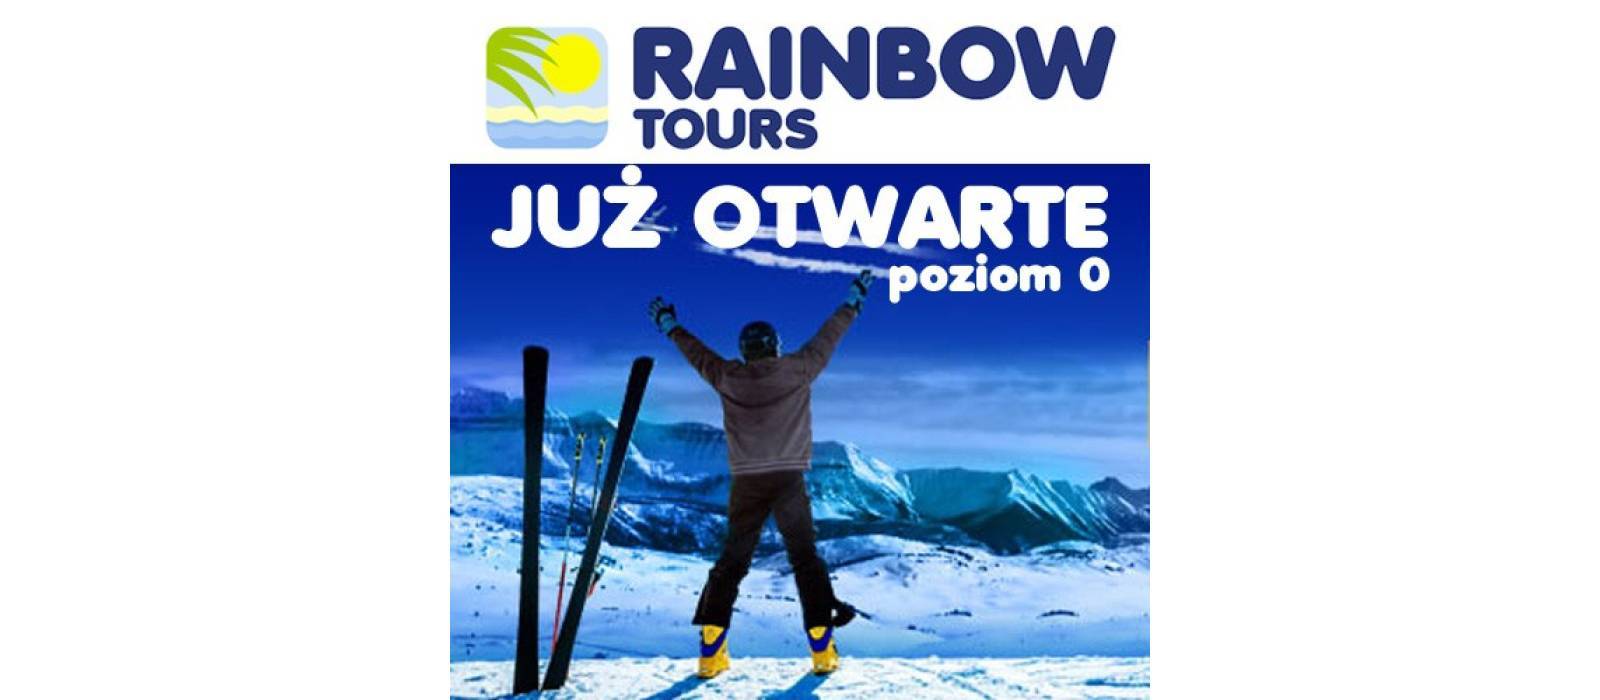 Otwarcie biura podróży Rainbow Tours - 1